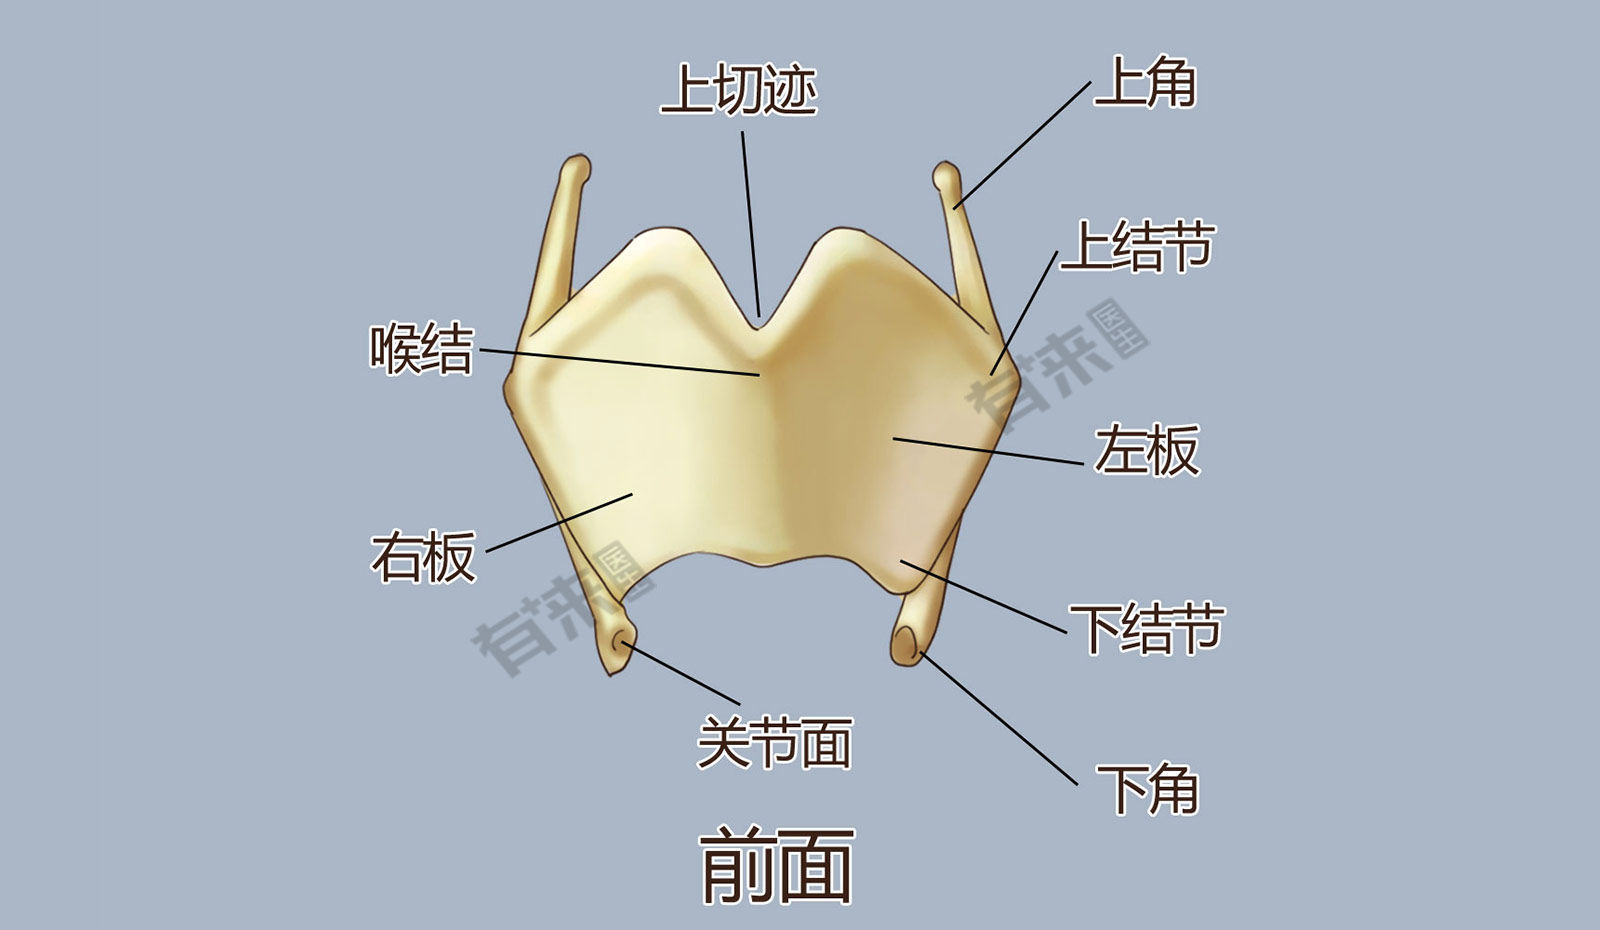 甲状软骨位置解剖图图片